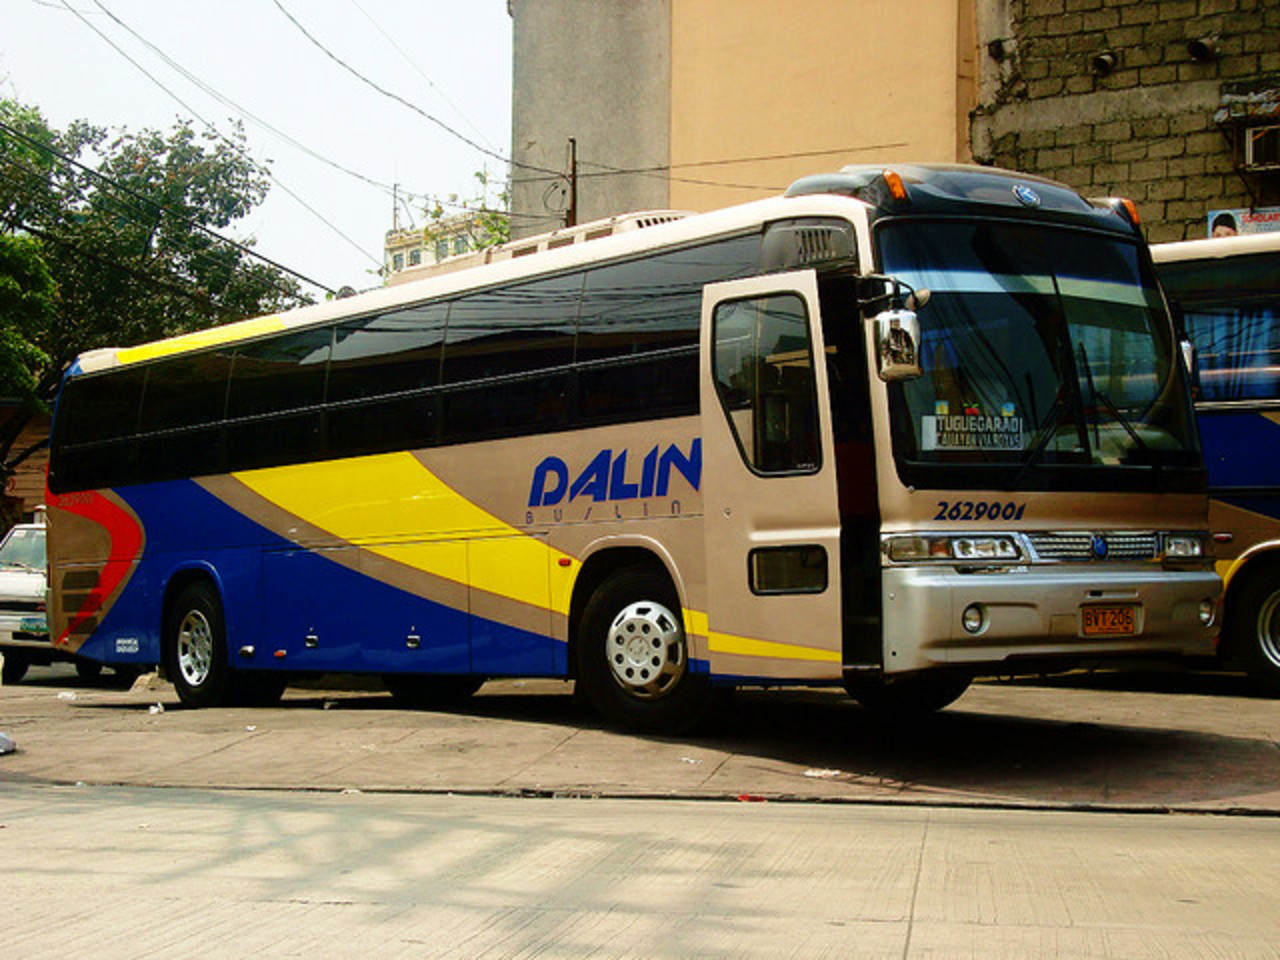 Ligne de bus Dalin - Kia Granbird SD-2629001 / Flickr - Partage de photos!